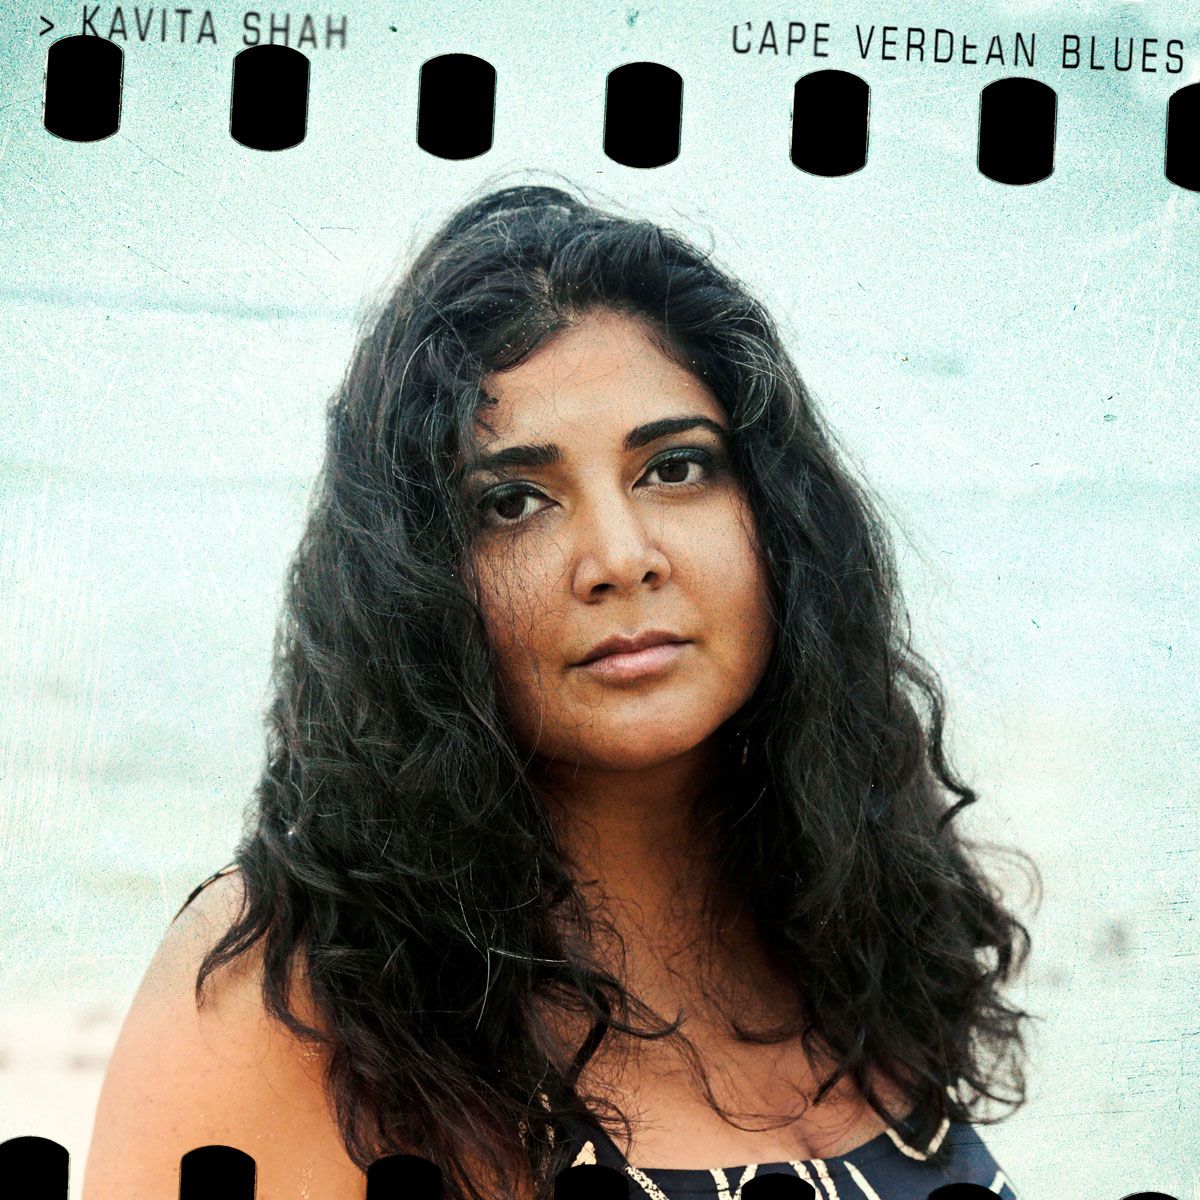 Cape Verdean Blues cover artwork